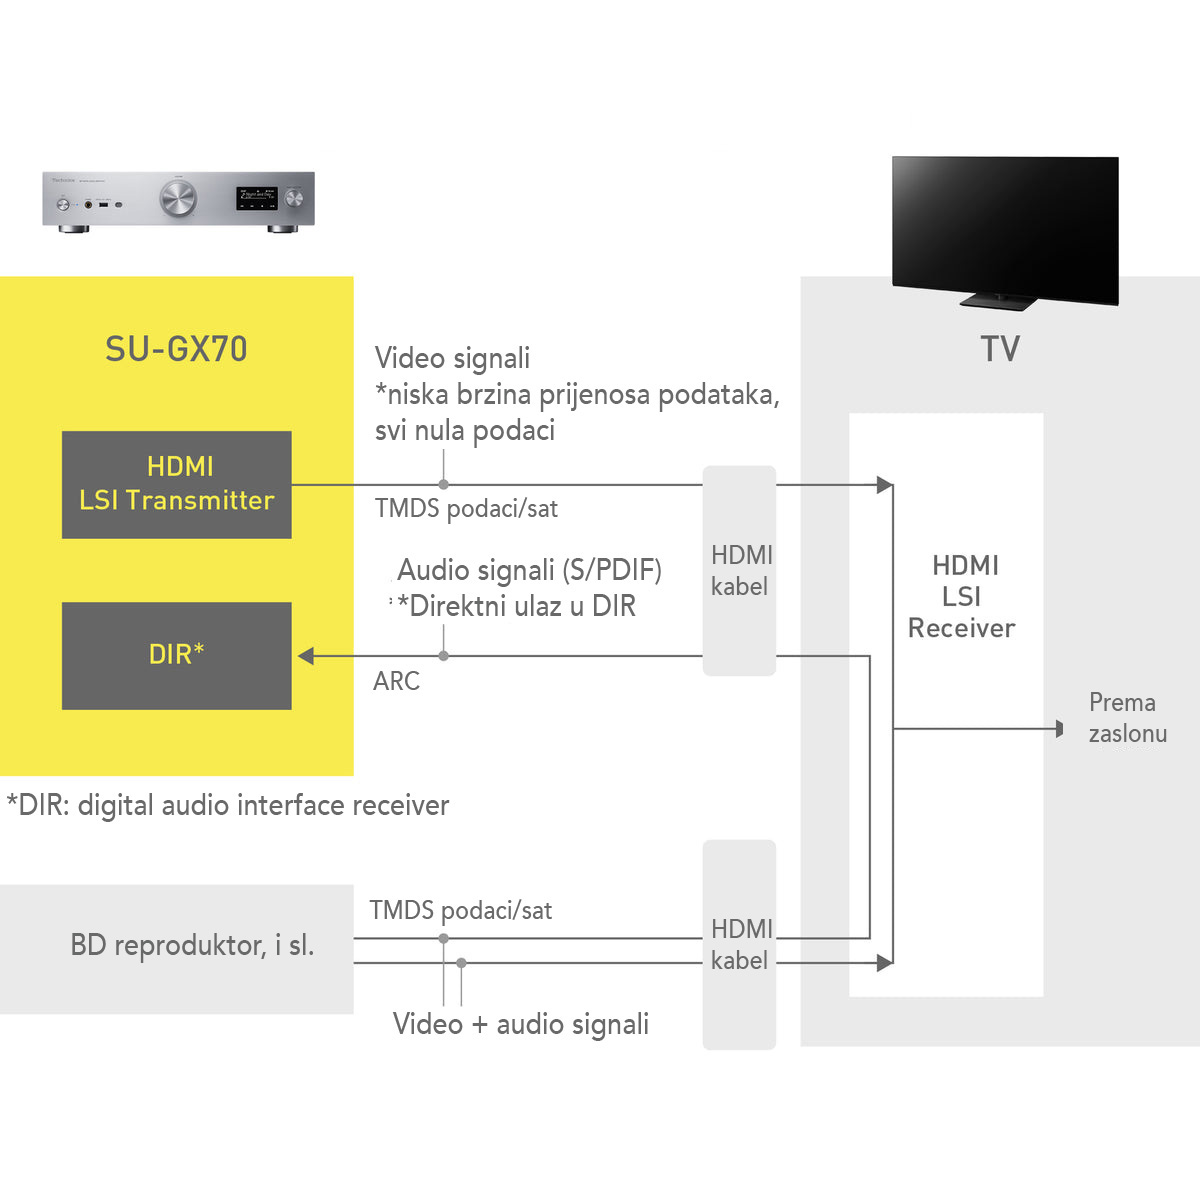 Zvuk visoke kvalitete kroz HDMI video izlaz s malim utjecajem